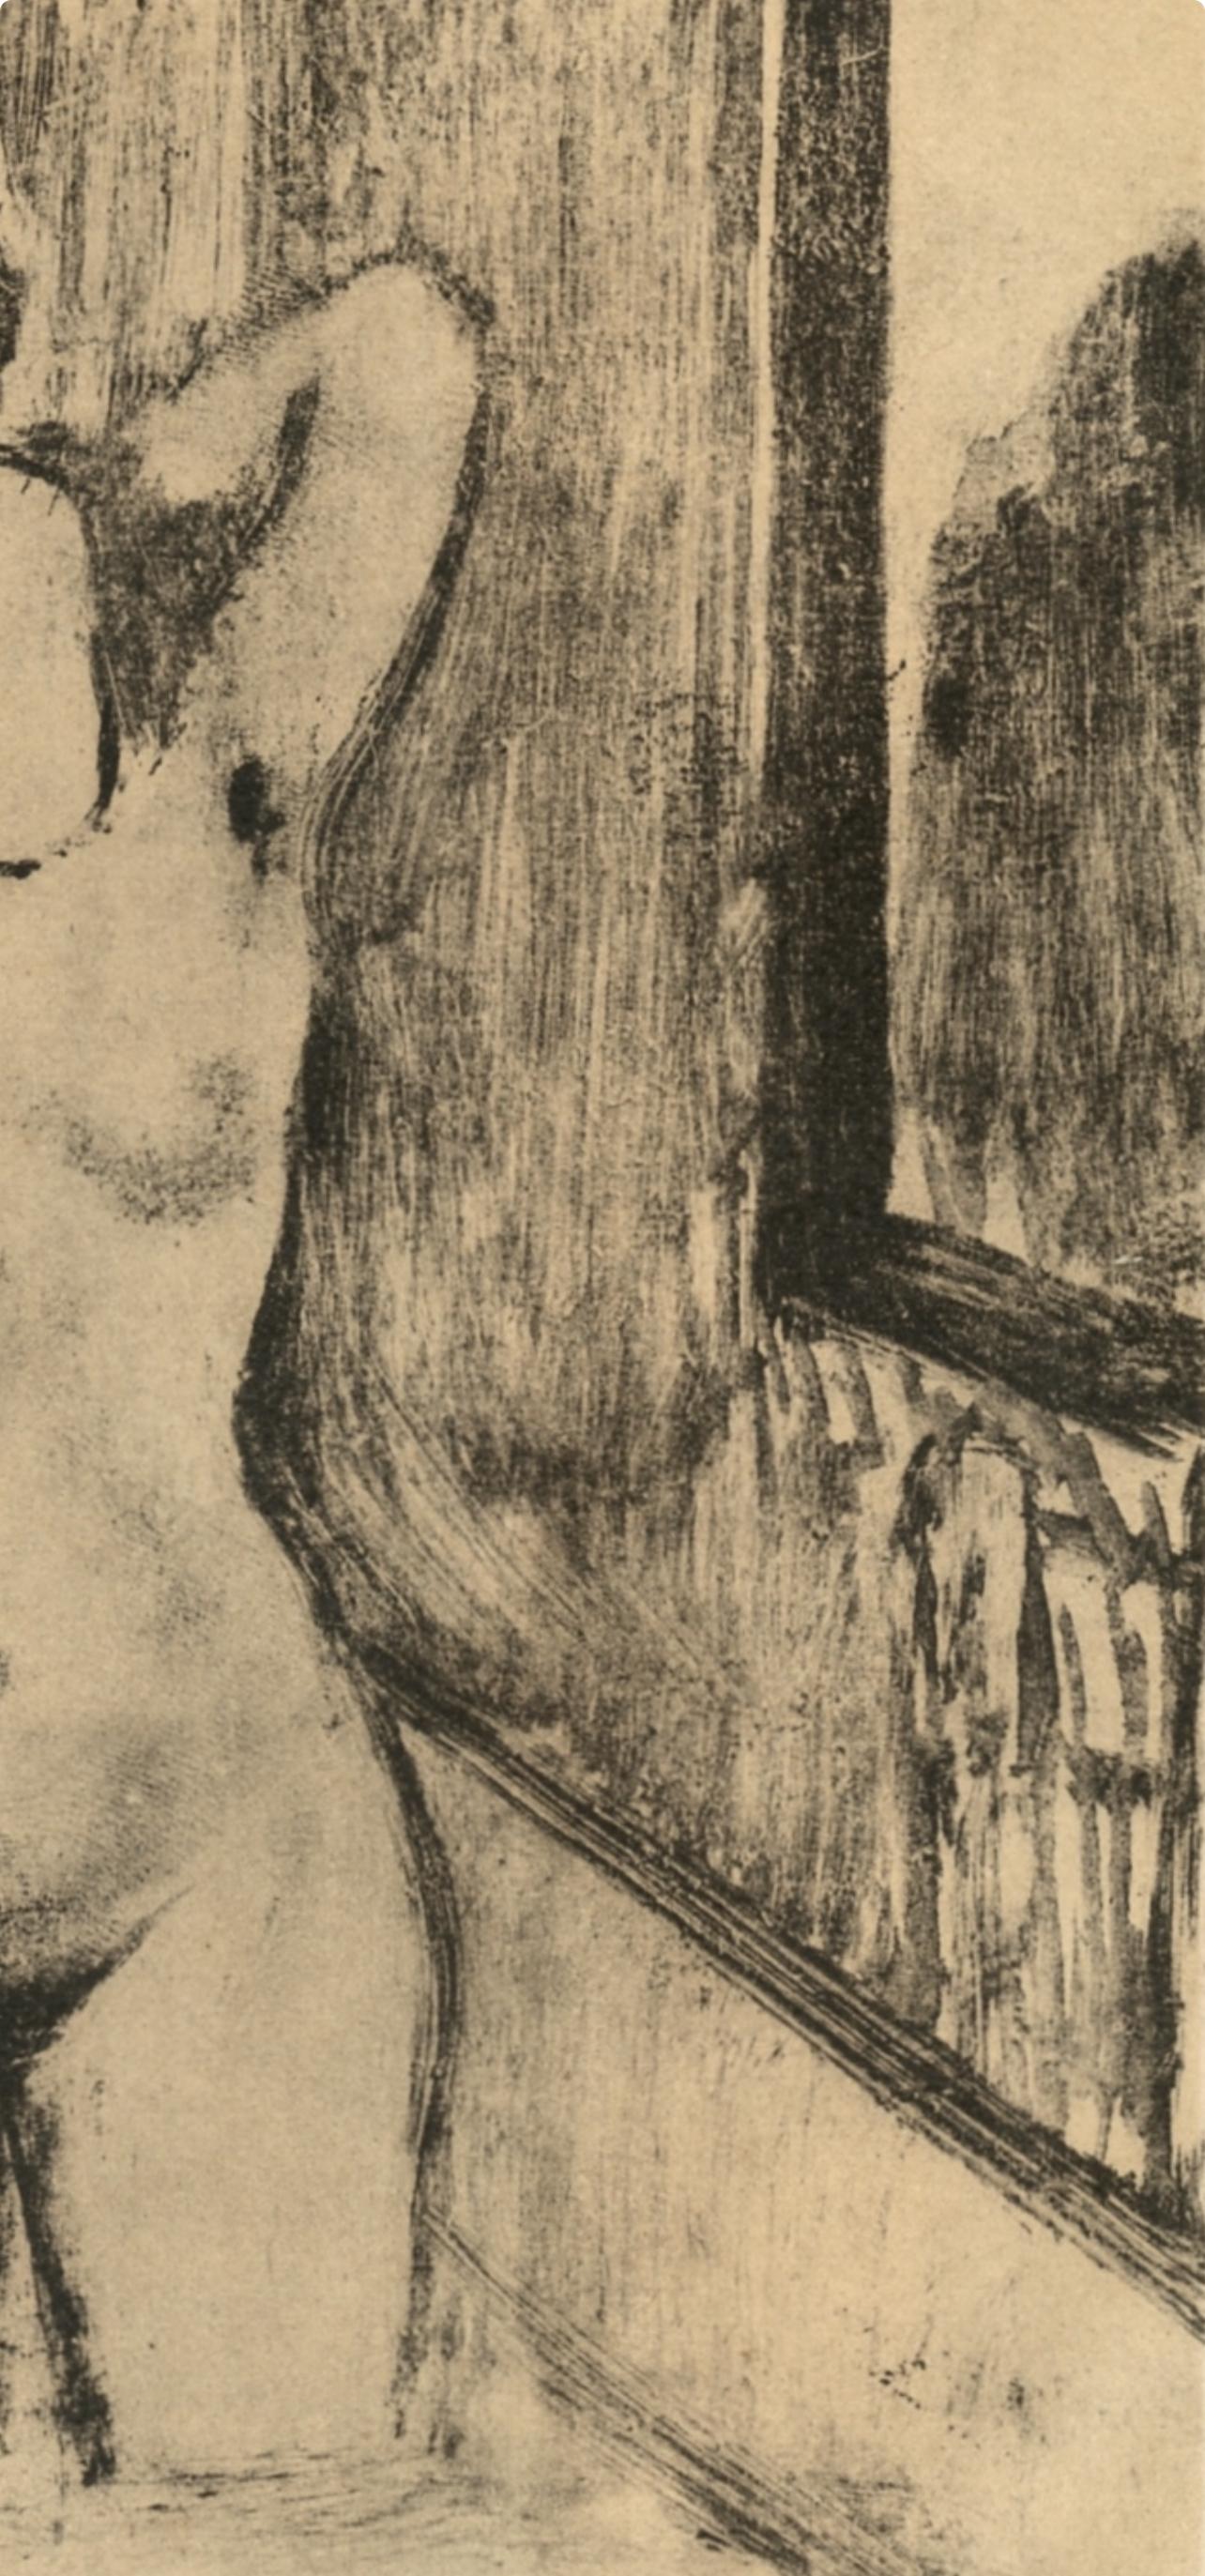 Degas, Femme debout dans une Baignoire, Les Monotypes (after) - Impressionist Print by Edgar Degas